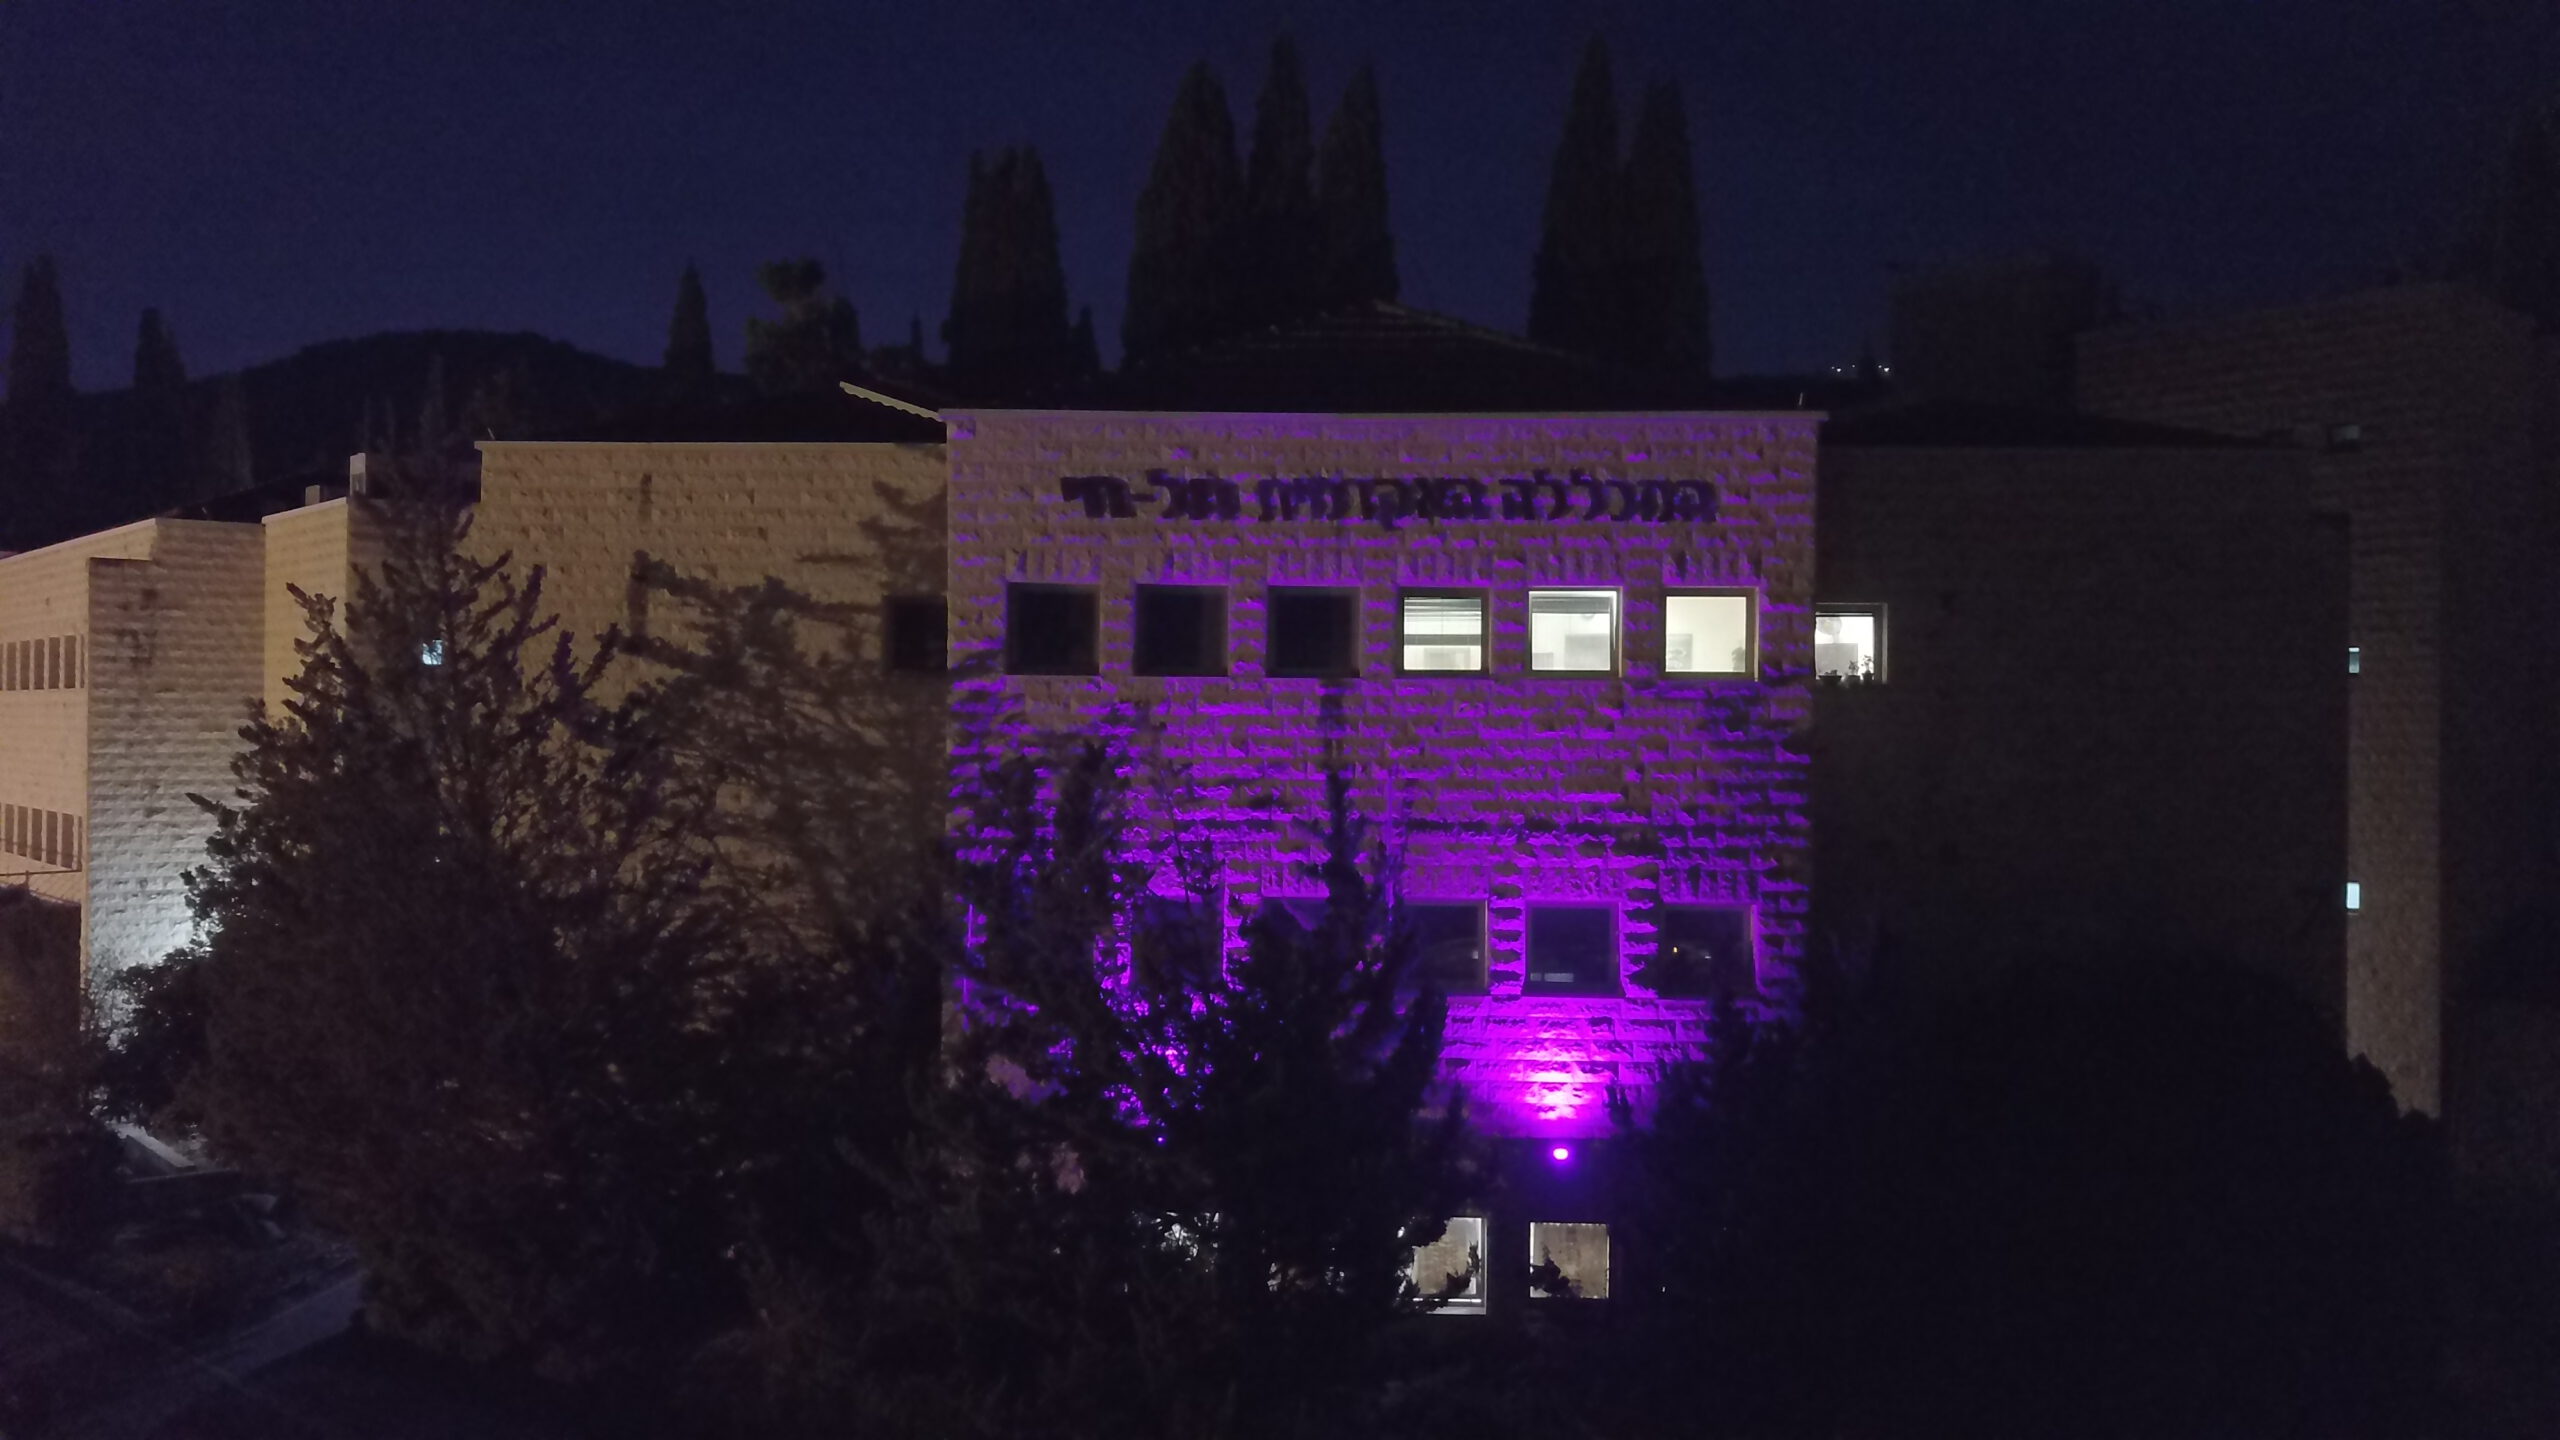 המכללה האקדמית תל חי מאירה בסגול את בניין המדעים ומצטרפת “ללילה סגול” ליום המודעות לאנשים עם מוגבלויות